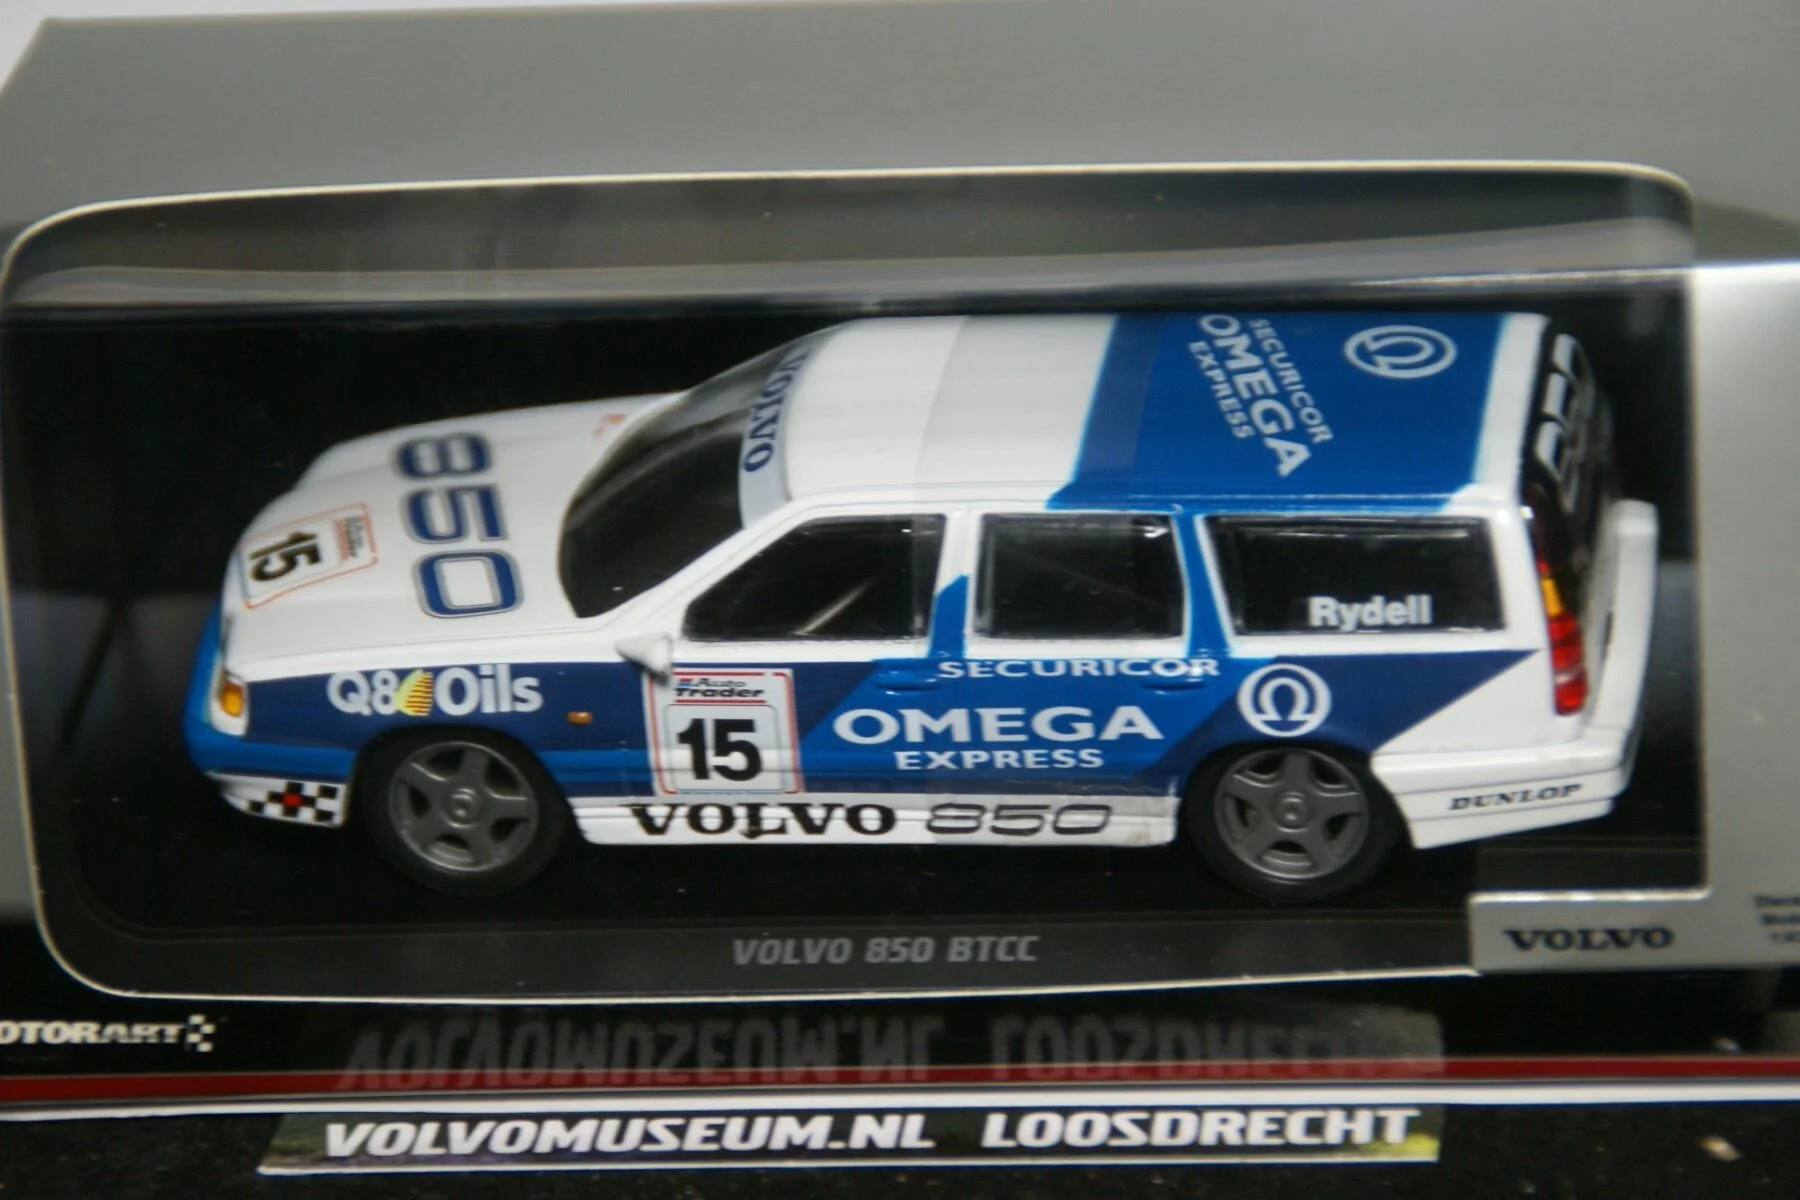 DSC02627 miniatuur 1994 Volvo 850 854 blauwwit BTTC Rydell 1op43 Motorart MB